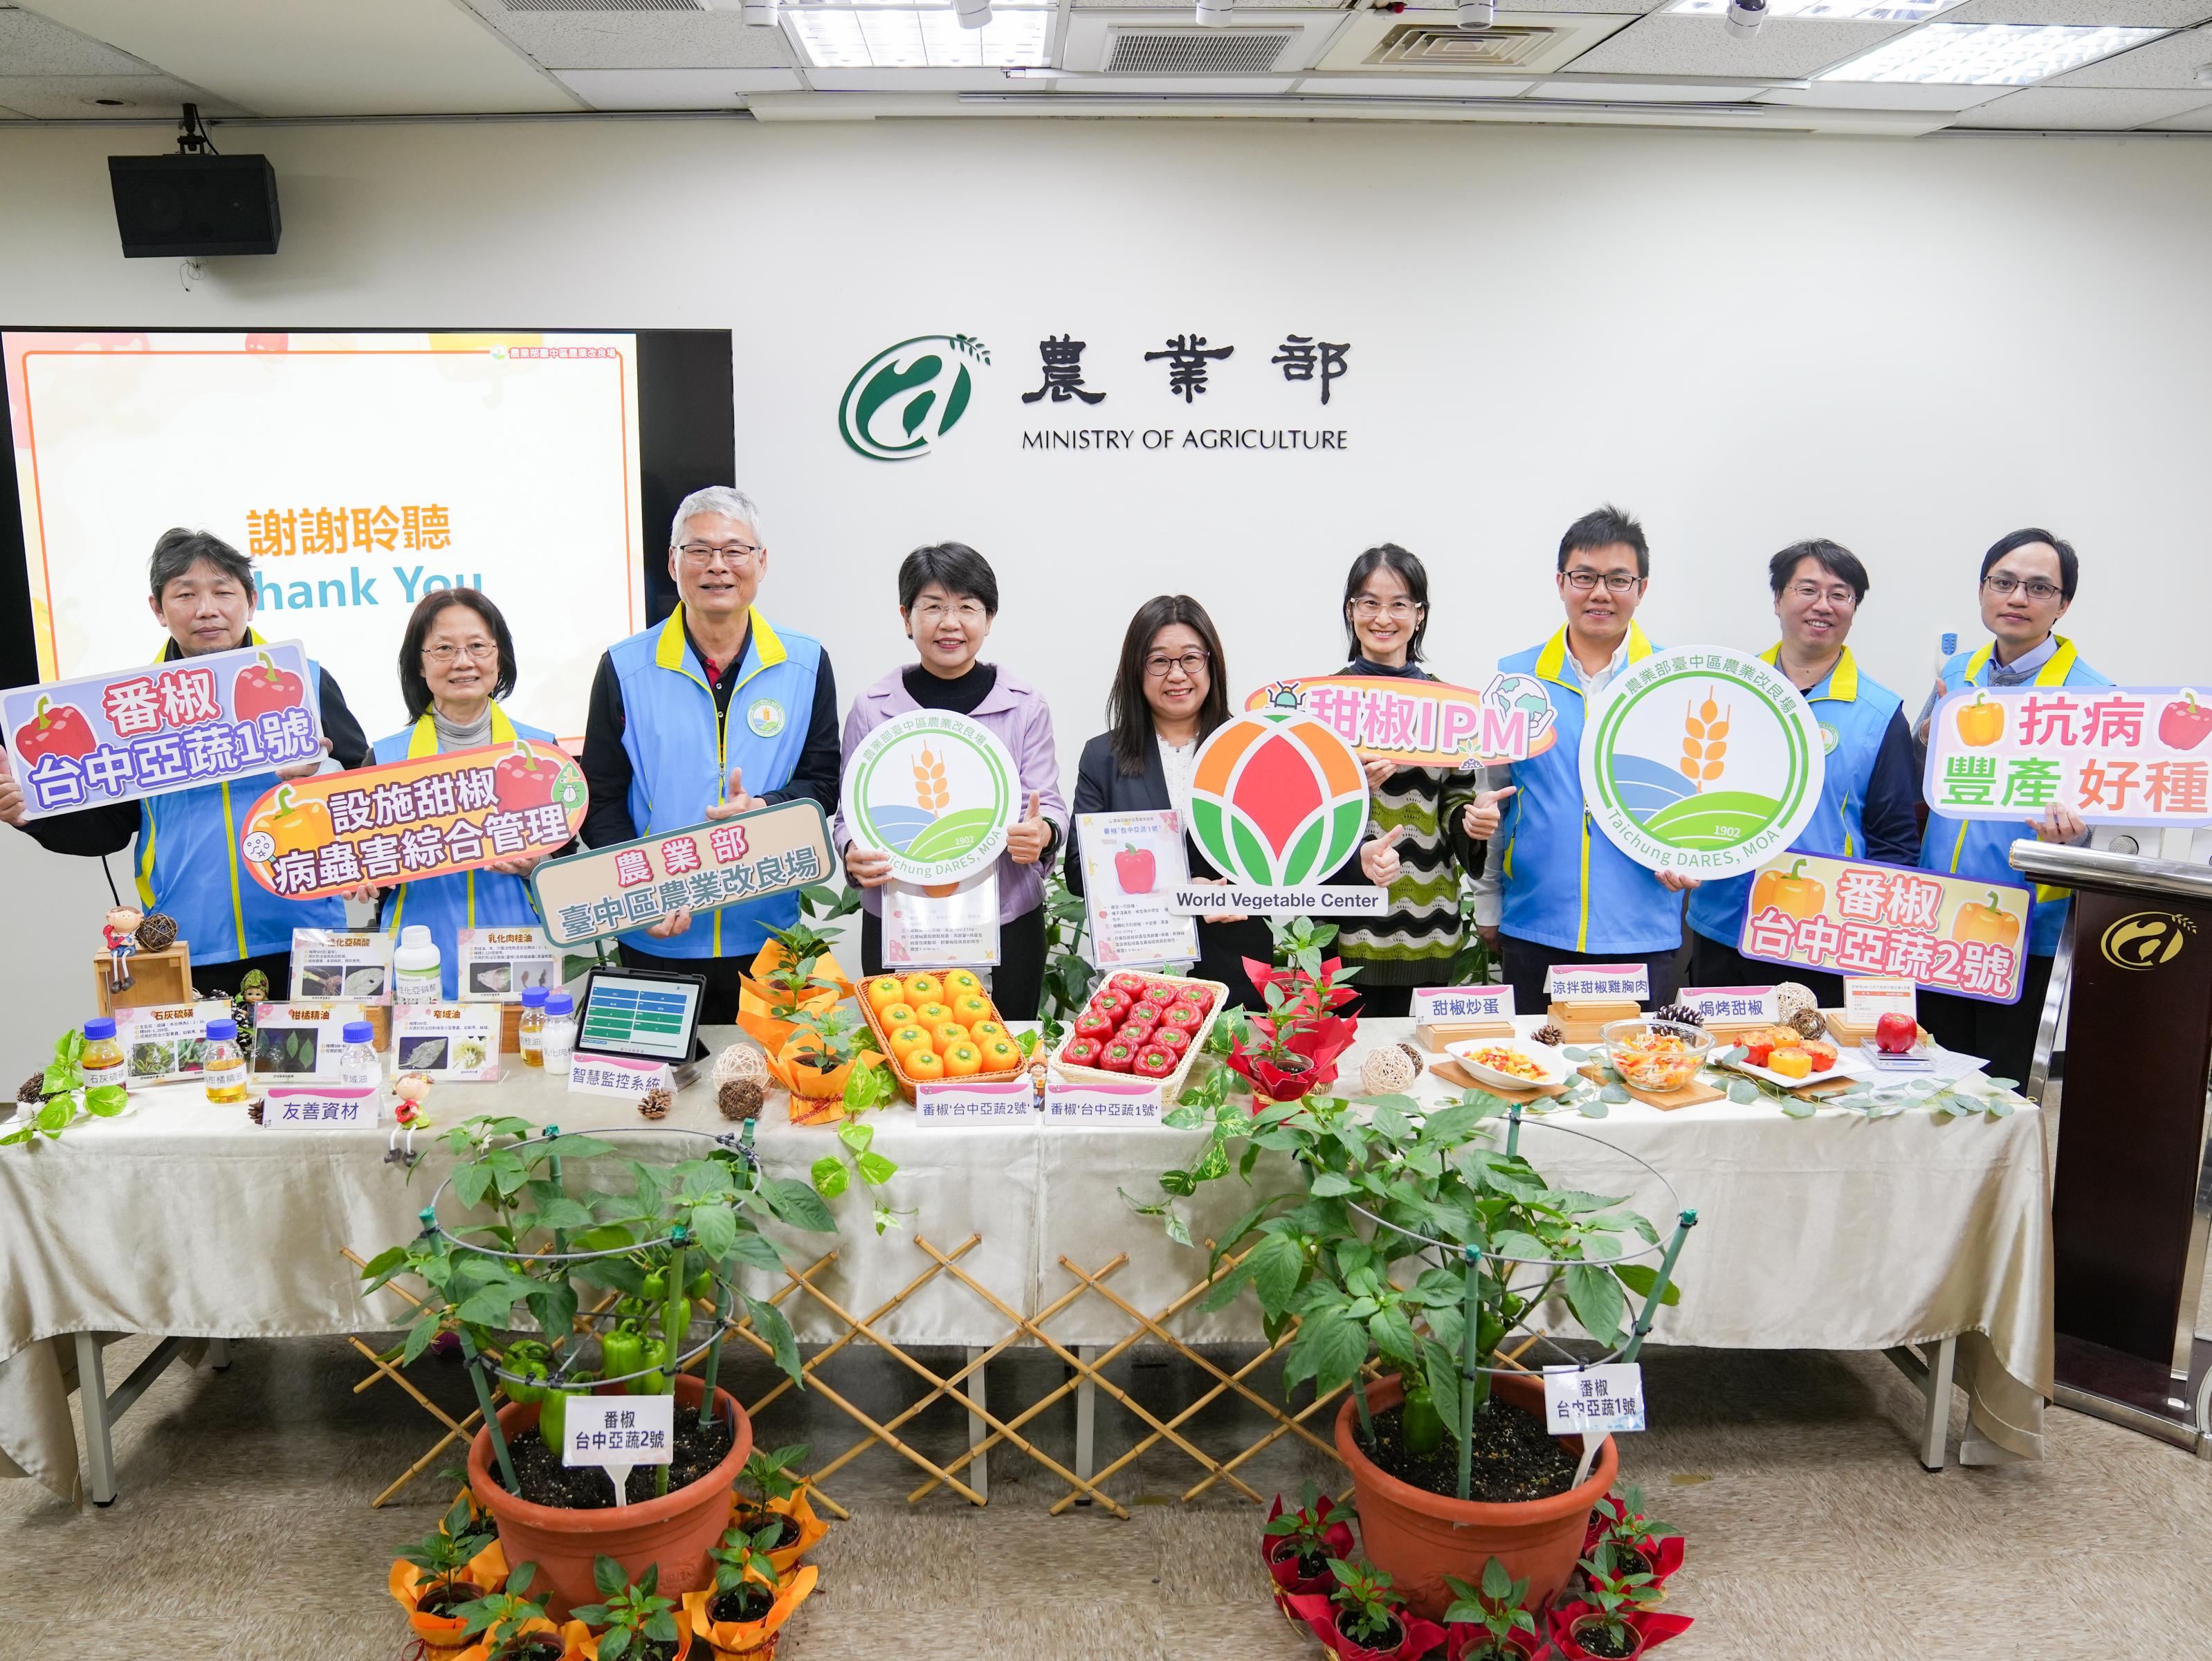 本場楊宏瑛場長(左4)、亞蔬-世界蔬菜中心專家及本場研究團隊合影